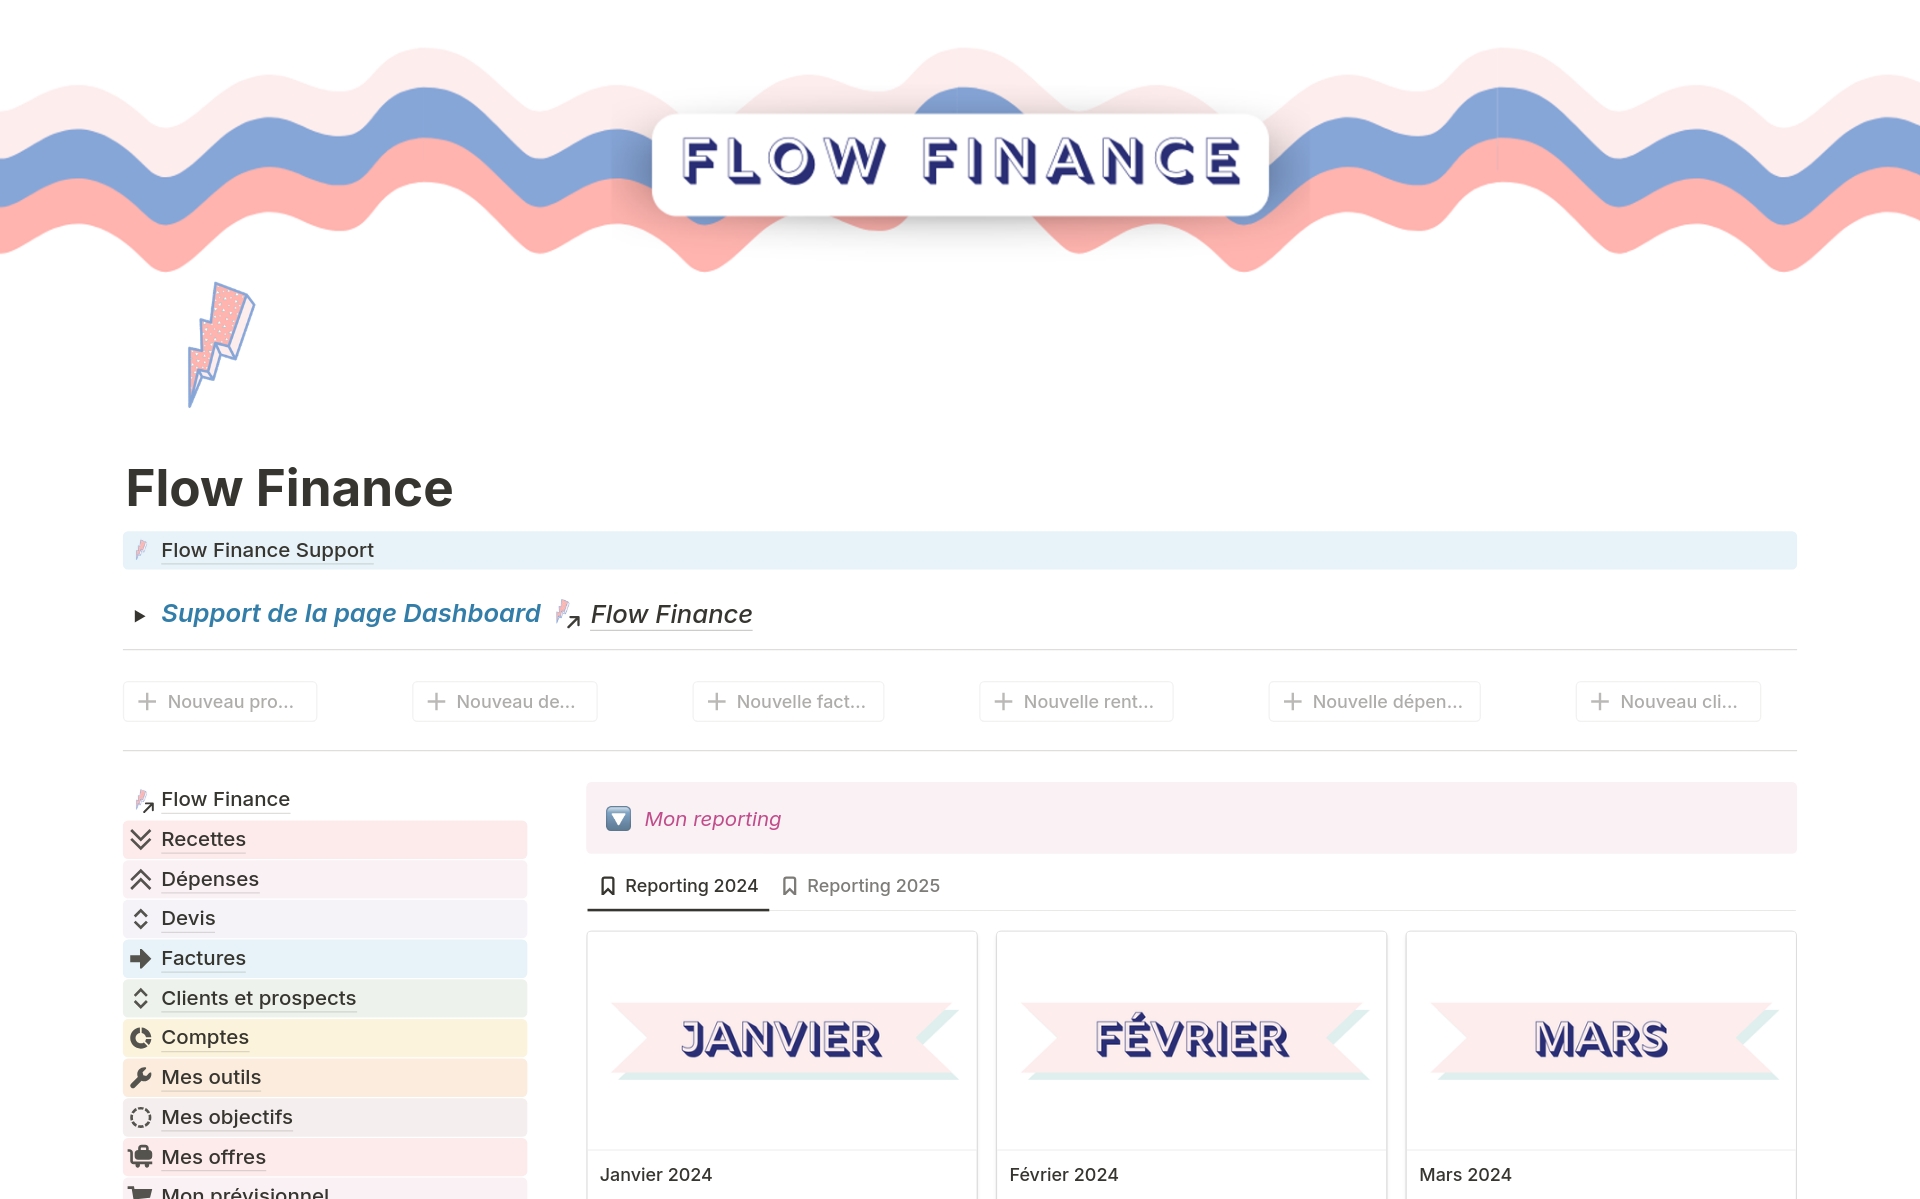 Vista previa de una plantilla para Flow Finance - Suivi financier